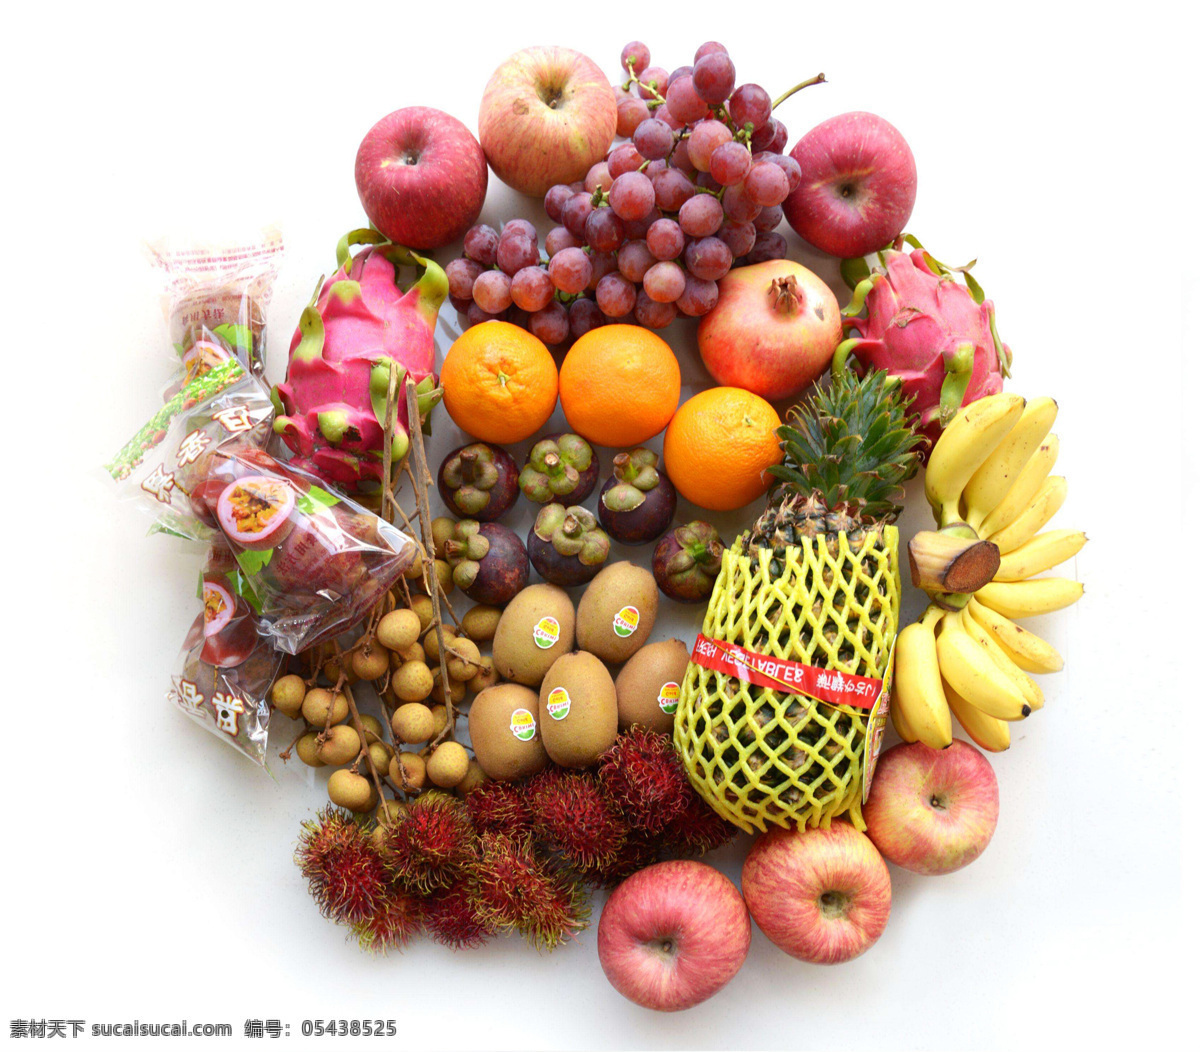 水果套餐 水果店 水果组合套餐 水果店组合 新鲜水果 新鲜果蔬 生物世界 水果